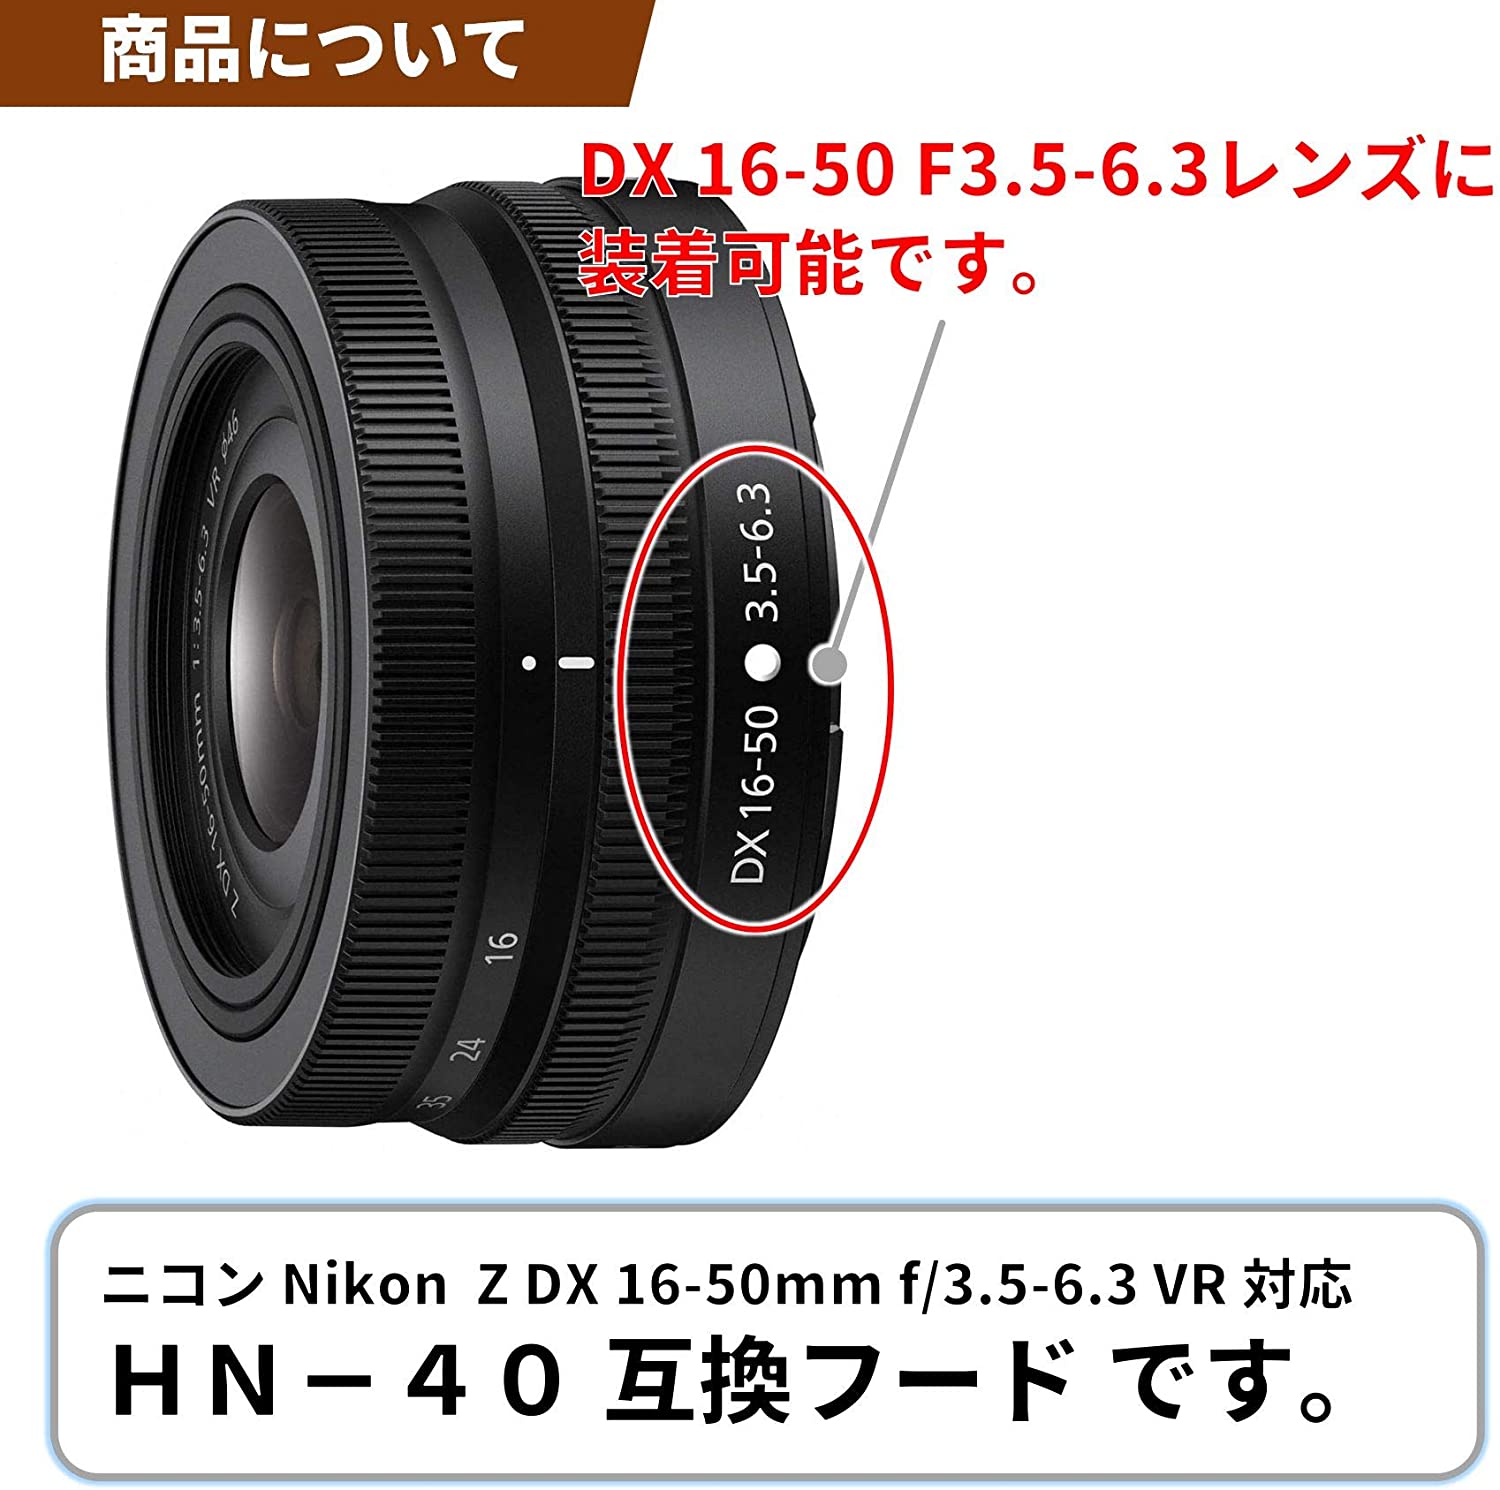 F-Foto  レンズフード HN-40 ブラック  (対象レンズ: ニコン Z DX 16-50mm f/3.5-6.3 VR) エフフォト